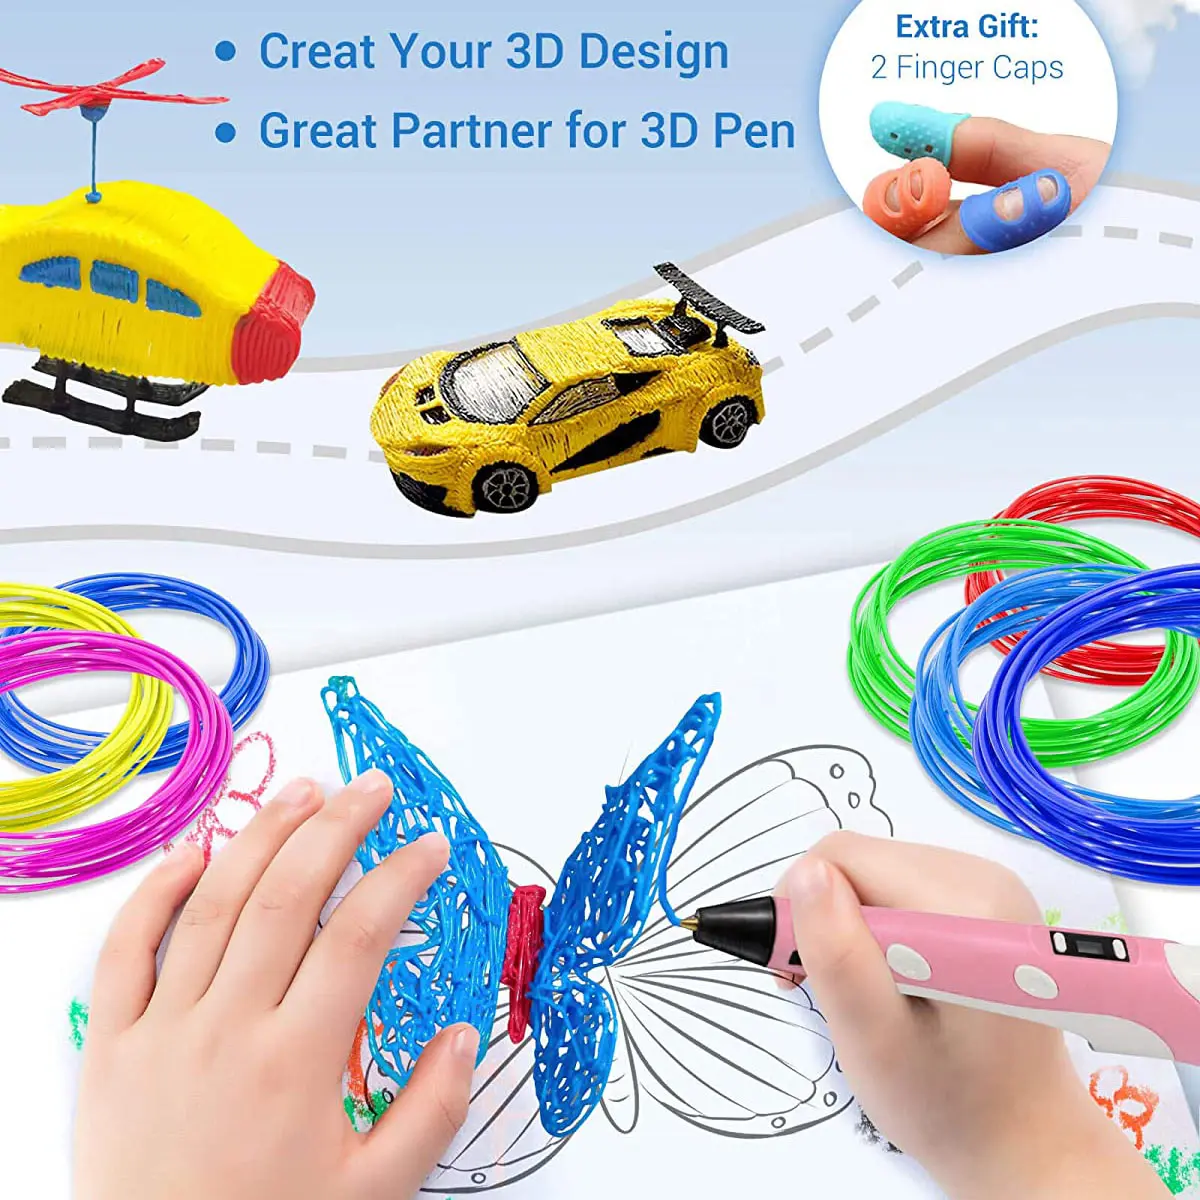 3D Pen for Kids, Parner 3D Art Pen Kit with LCD Display, Stylo 3D